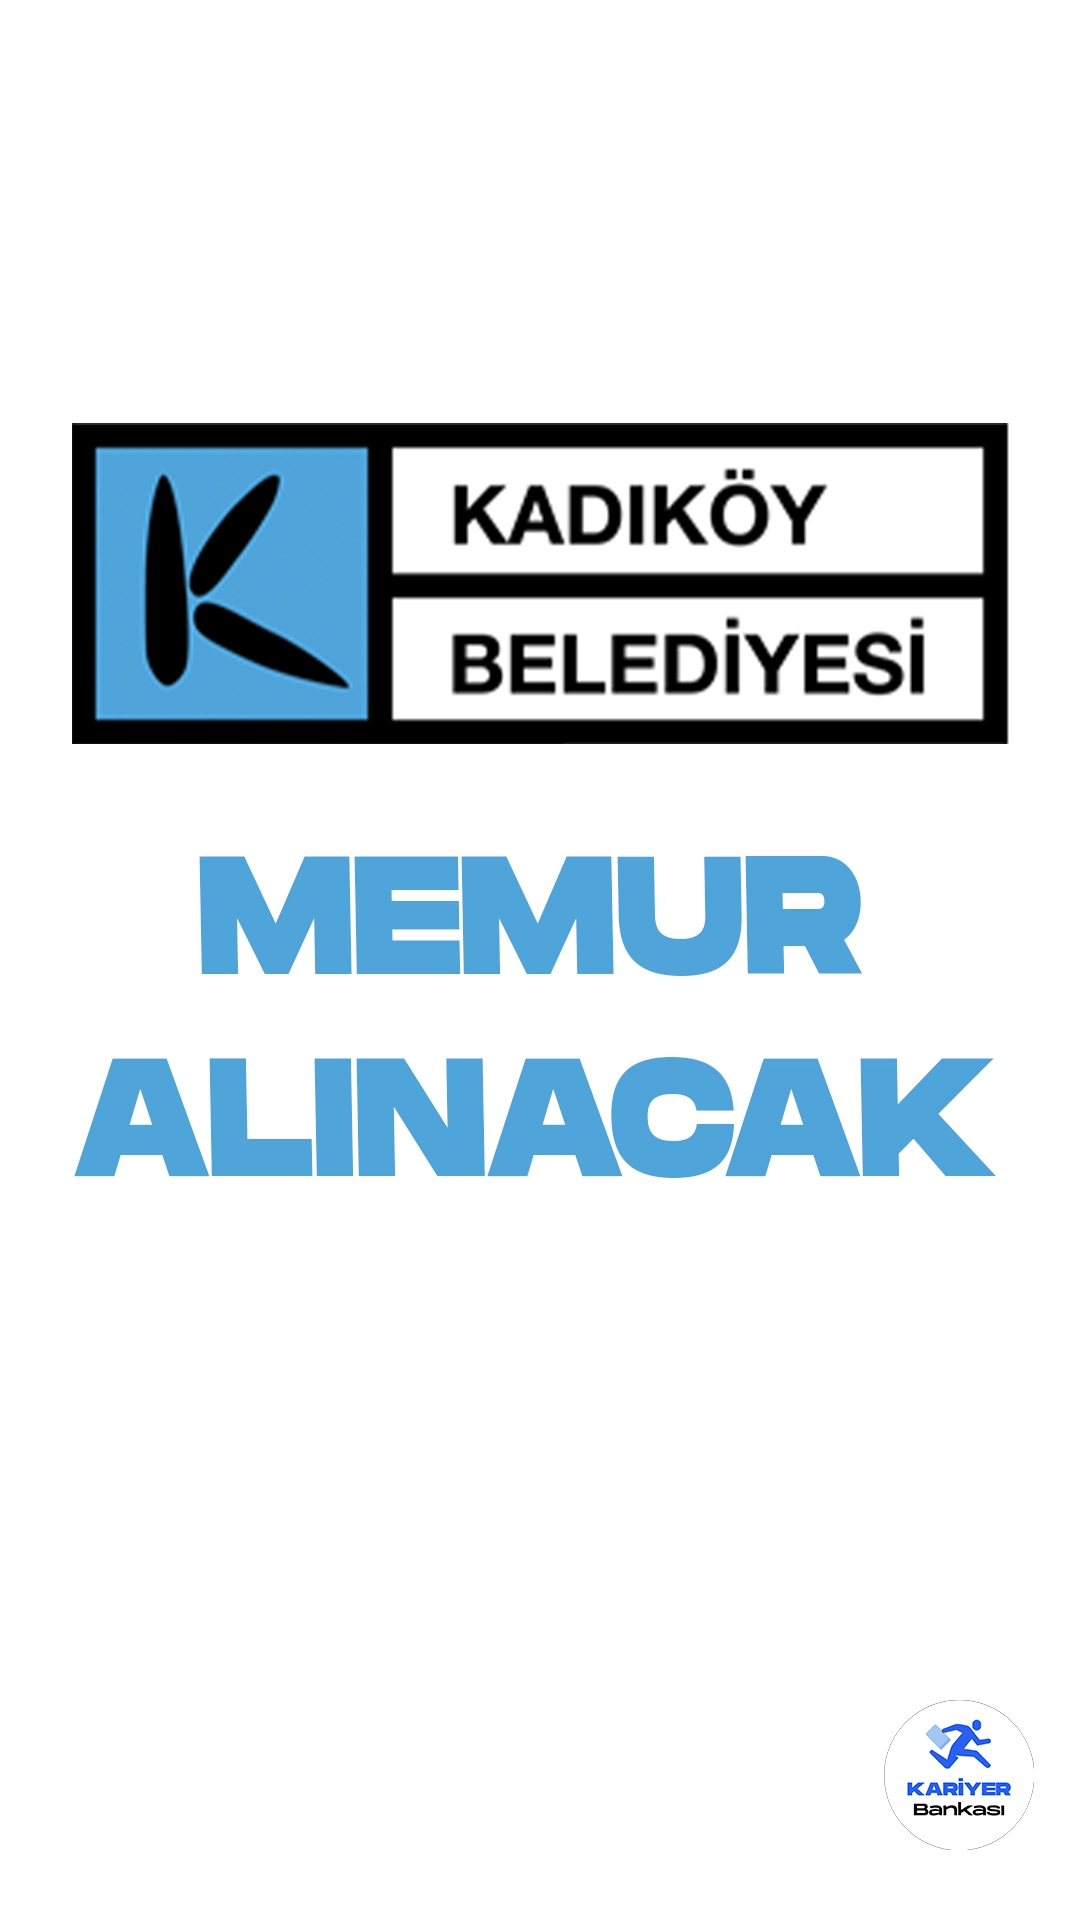 Kadıköy Belediyesi memur alımı duyurusu yayımlandı. Cumhurbaşkanlığı SBB'de yayımlanan duyuruya göre, Kadıköy Belediyesine memur, VHKİ, tahsildar ve zabıta memuru ünvanlarında olmak üzere 32 memur alımı yapılacak.Başvuru işlemleri 23 Ekim'de başlayacak.